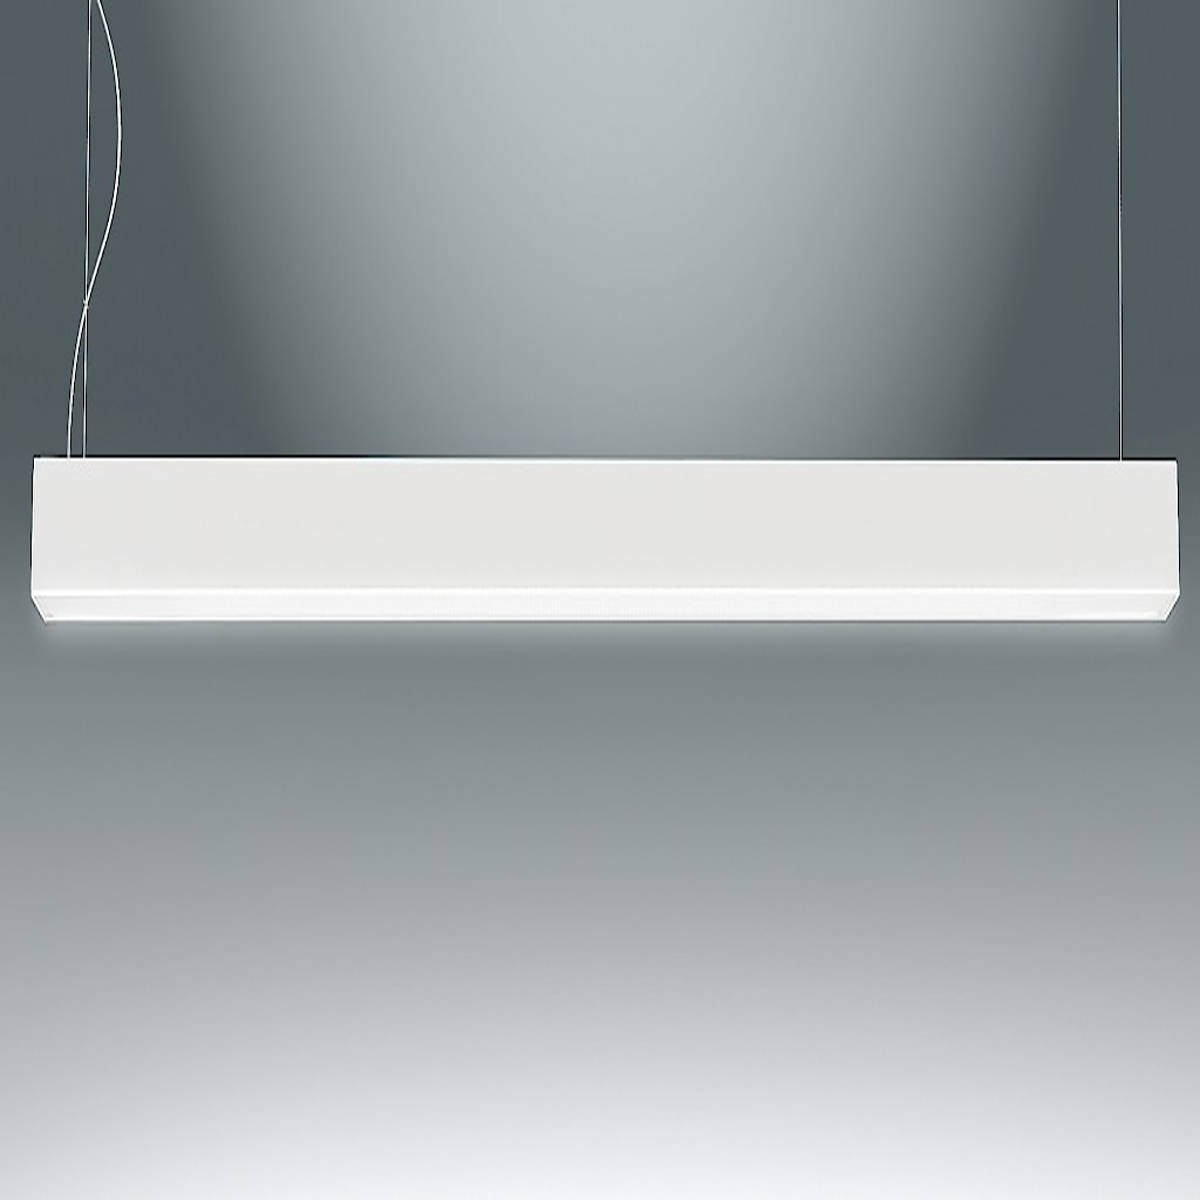 Sospensione minimale con struttura in alluminio, dalla linea lineare,  colore bianco con luce a Led bidirezionale ( 26+5W ) integrata, dimensioni:  L. 120 Cm, H. Max 155 Cm. Pierlux Illuminazione